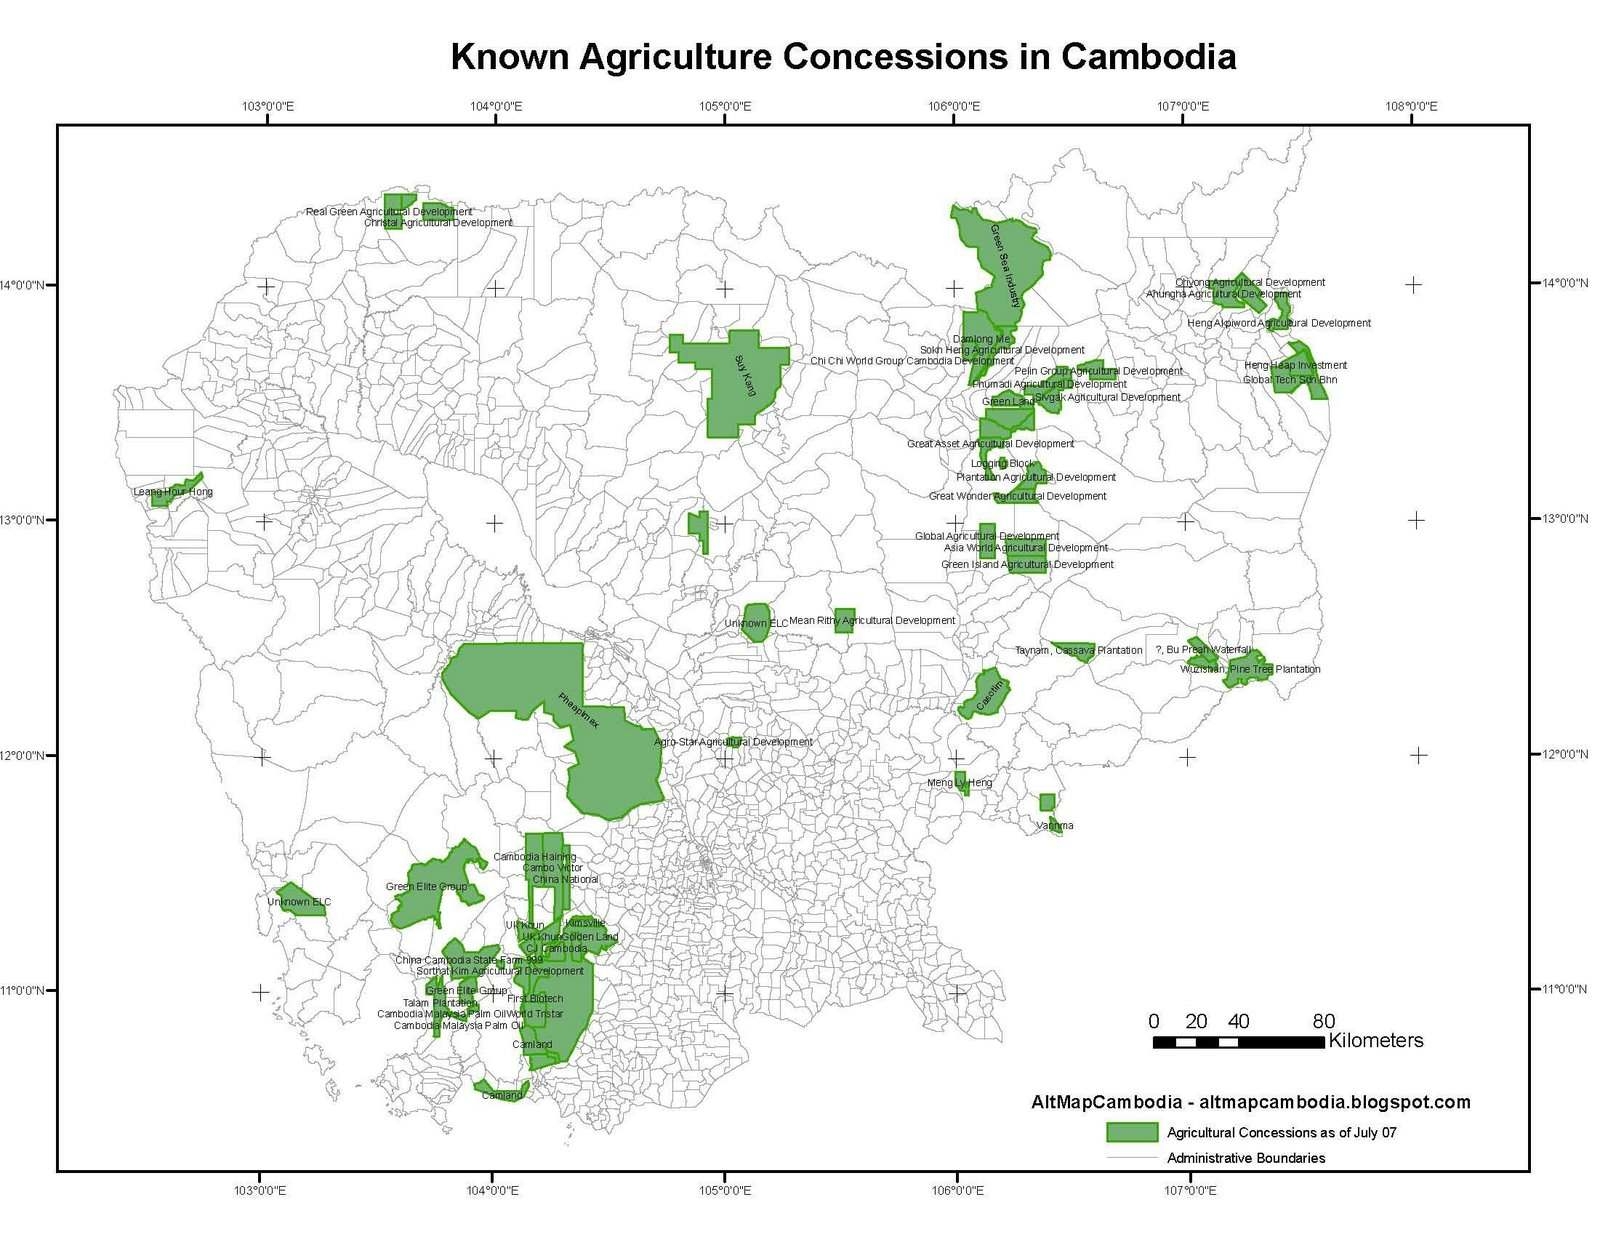 캄보디아의 농지 양도 지역